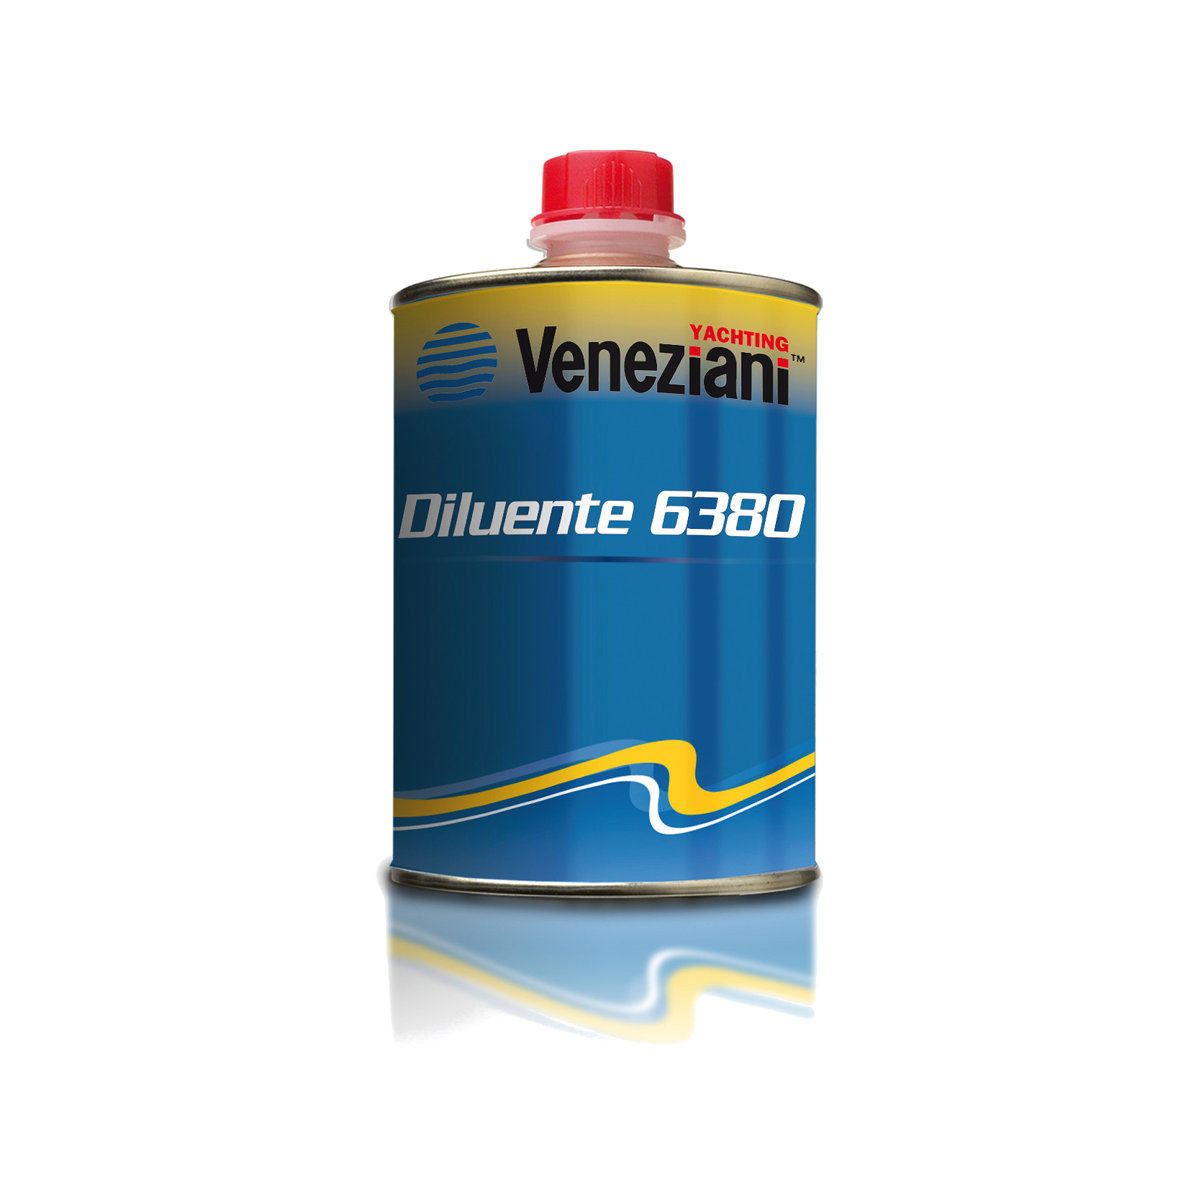 Veneziani diluant 6380 pour produit gummipaint, 500ml